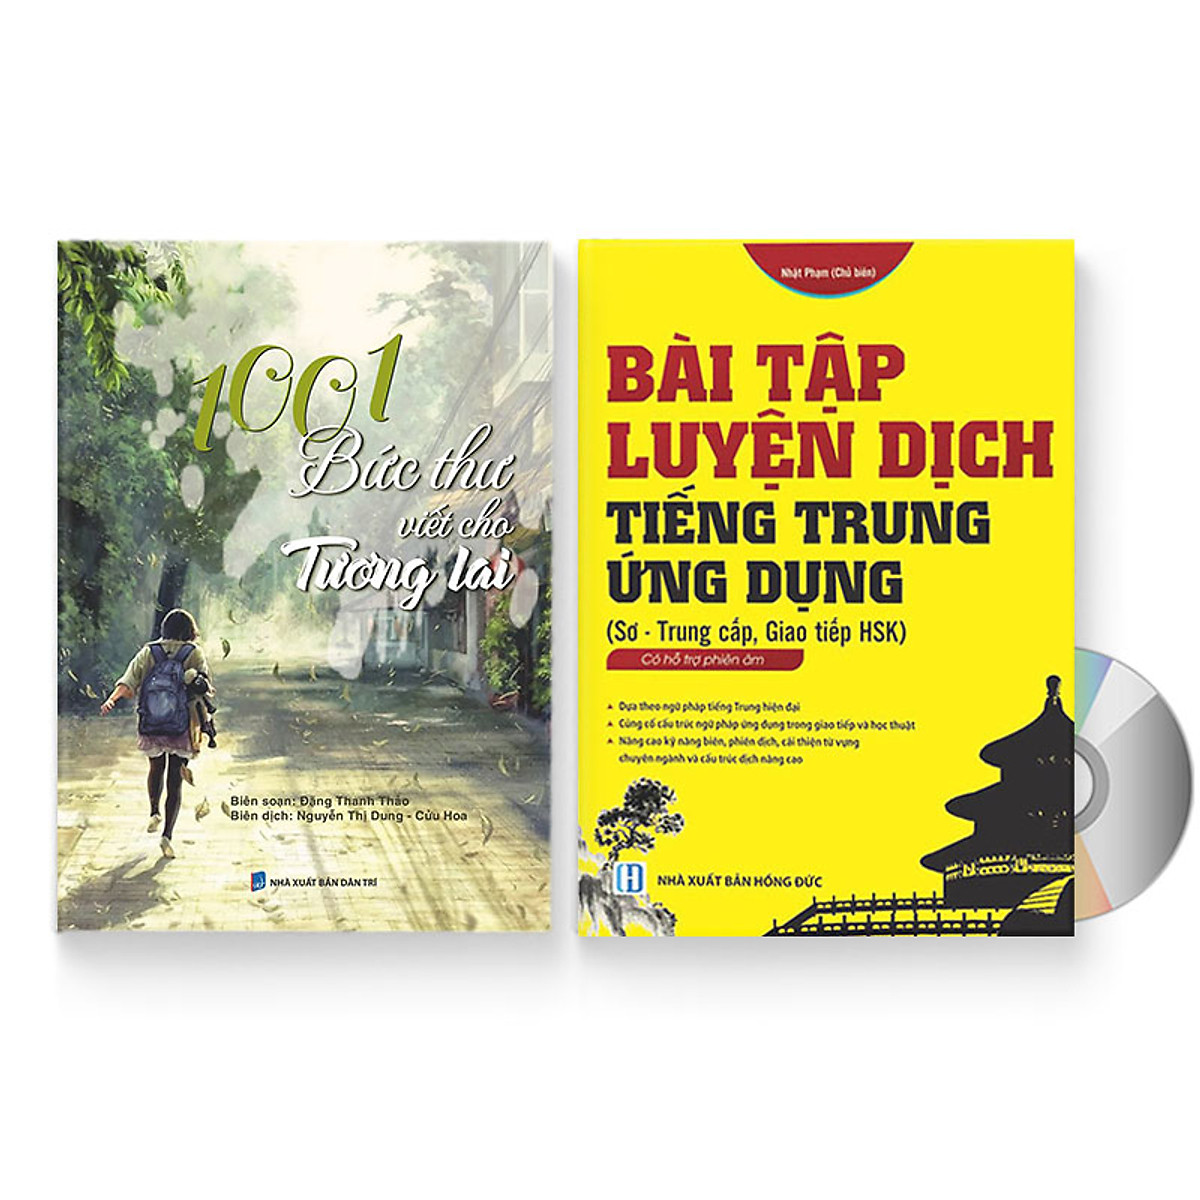 Combo 2 sách: 1001 Bức thư viết cho tương lai + Bài tập luyện dịch tiếng Trung Ứng Dụng (Sơ – Trung cấp, giao tiếp HSK) (Trung – Pinyin – Việt, có đáp án) + DVD quà tặng